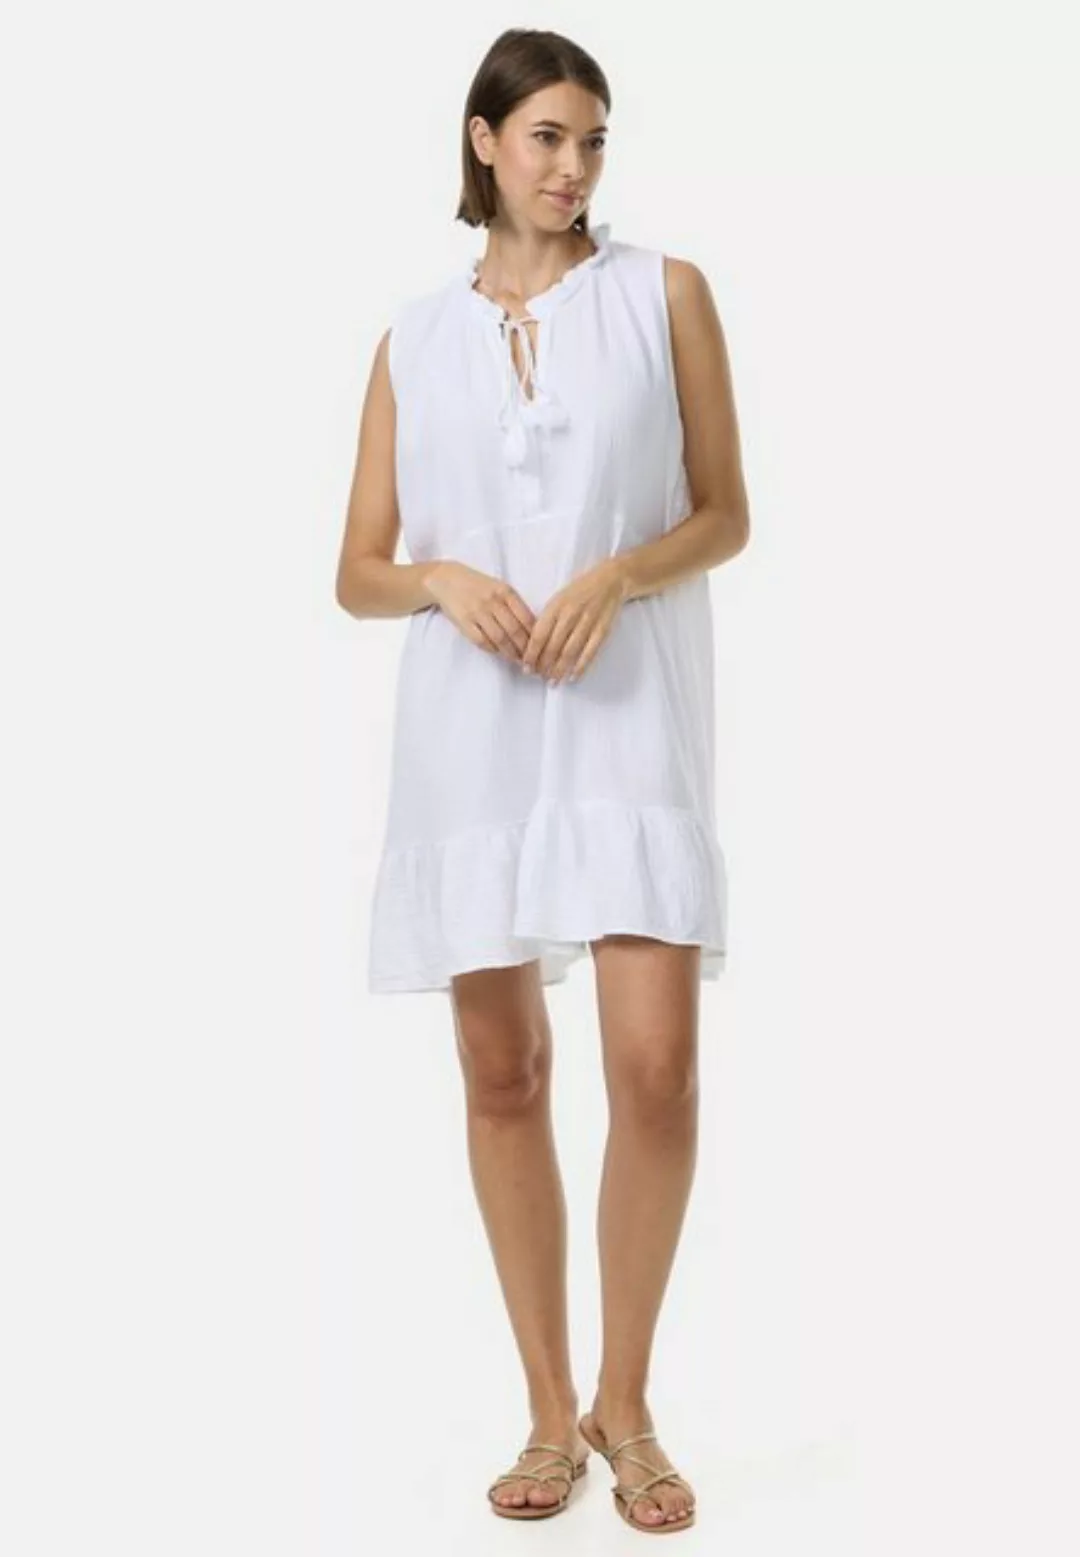 PM SELECTED Tunikakleid PM49 (Romantisches Musselin Minikleid ohne Ärmel) günstig online kaufen